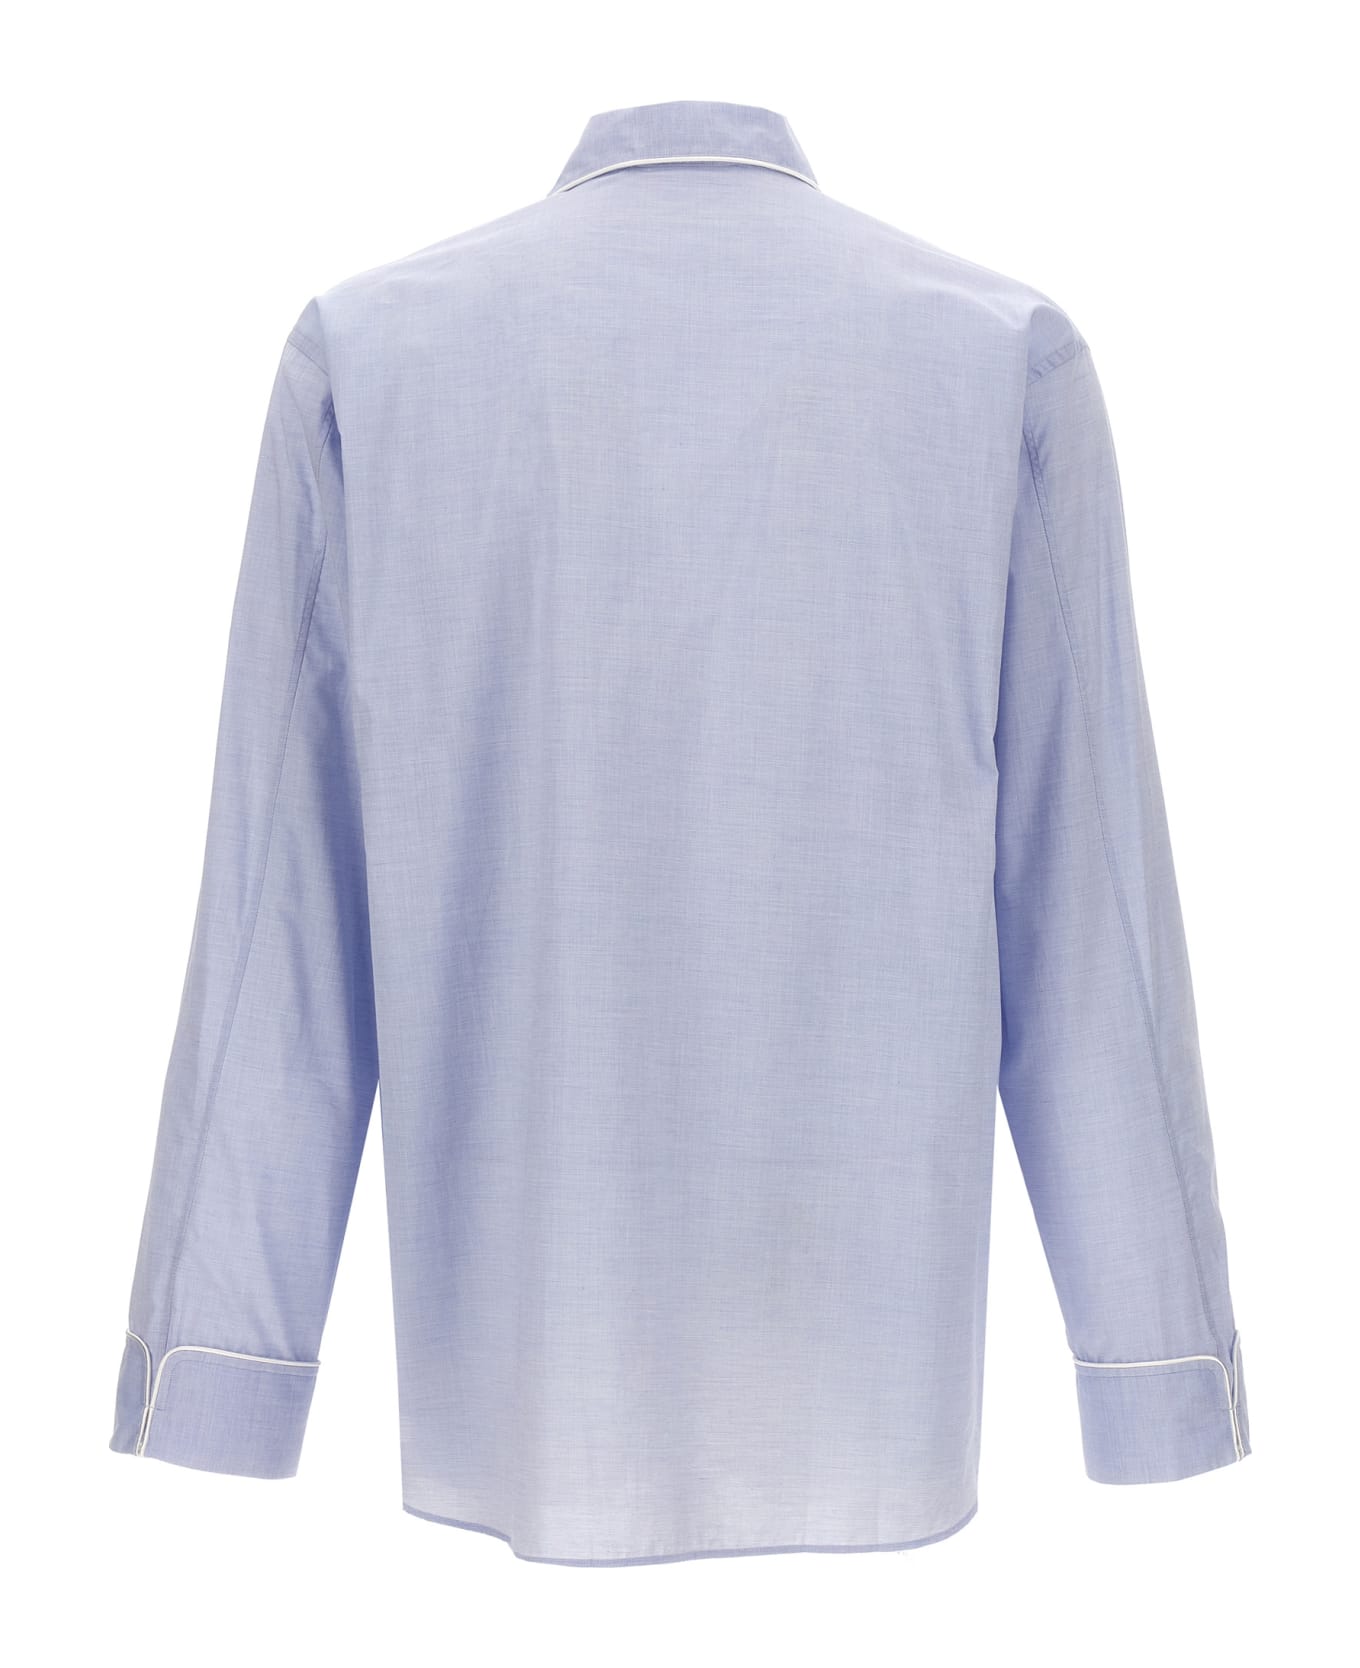 Wales Bonner 'market' Shirt - Light Blue シャツ